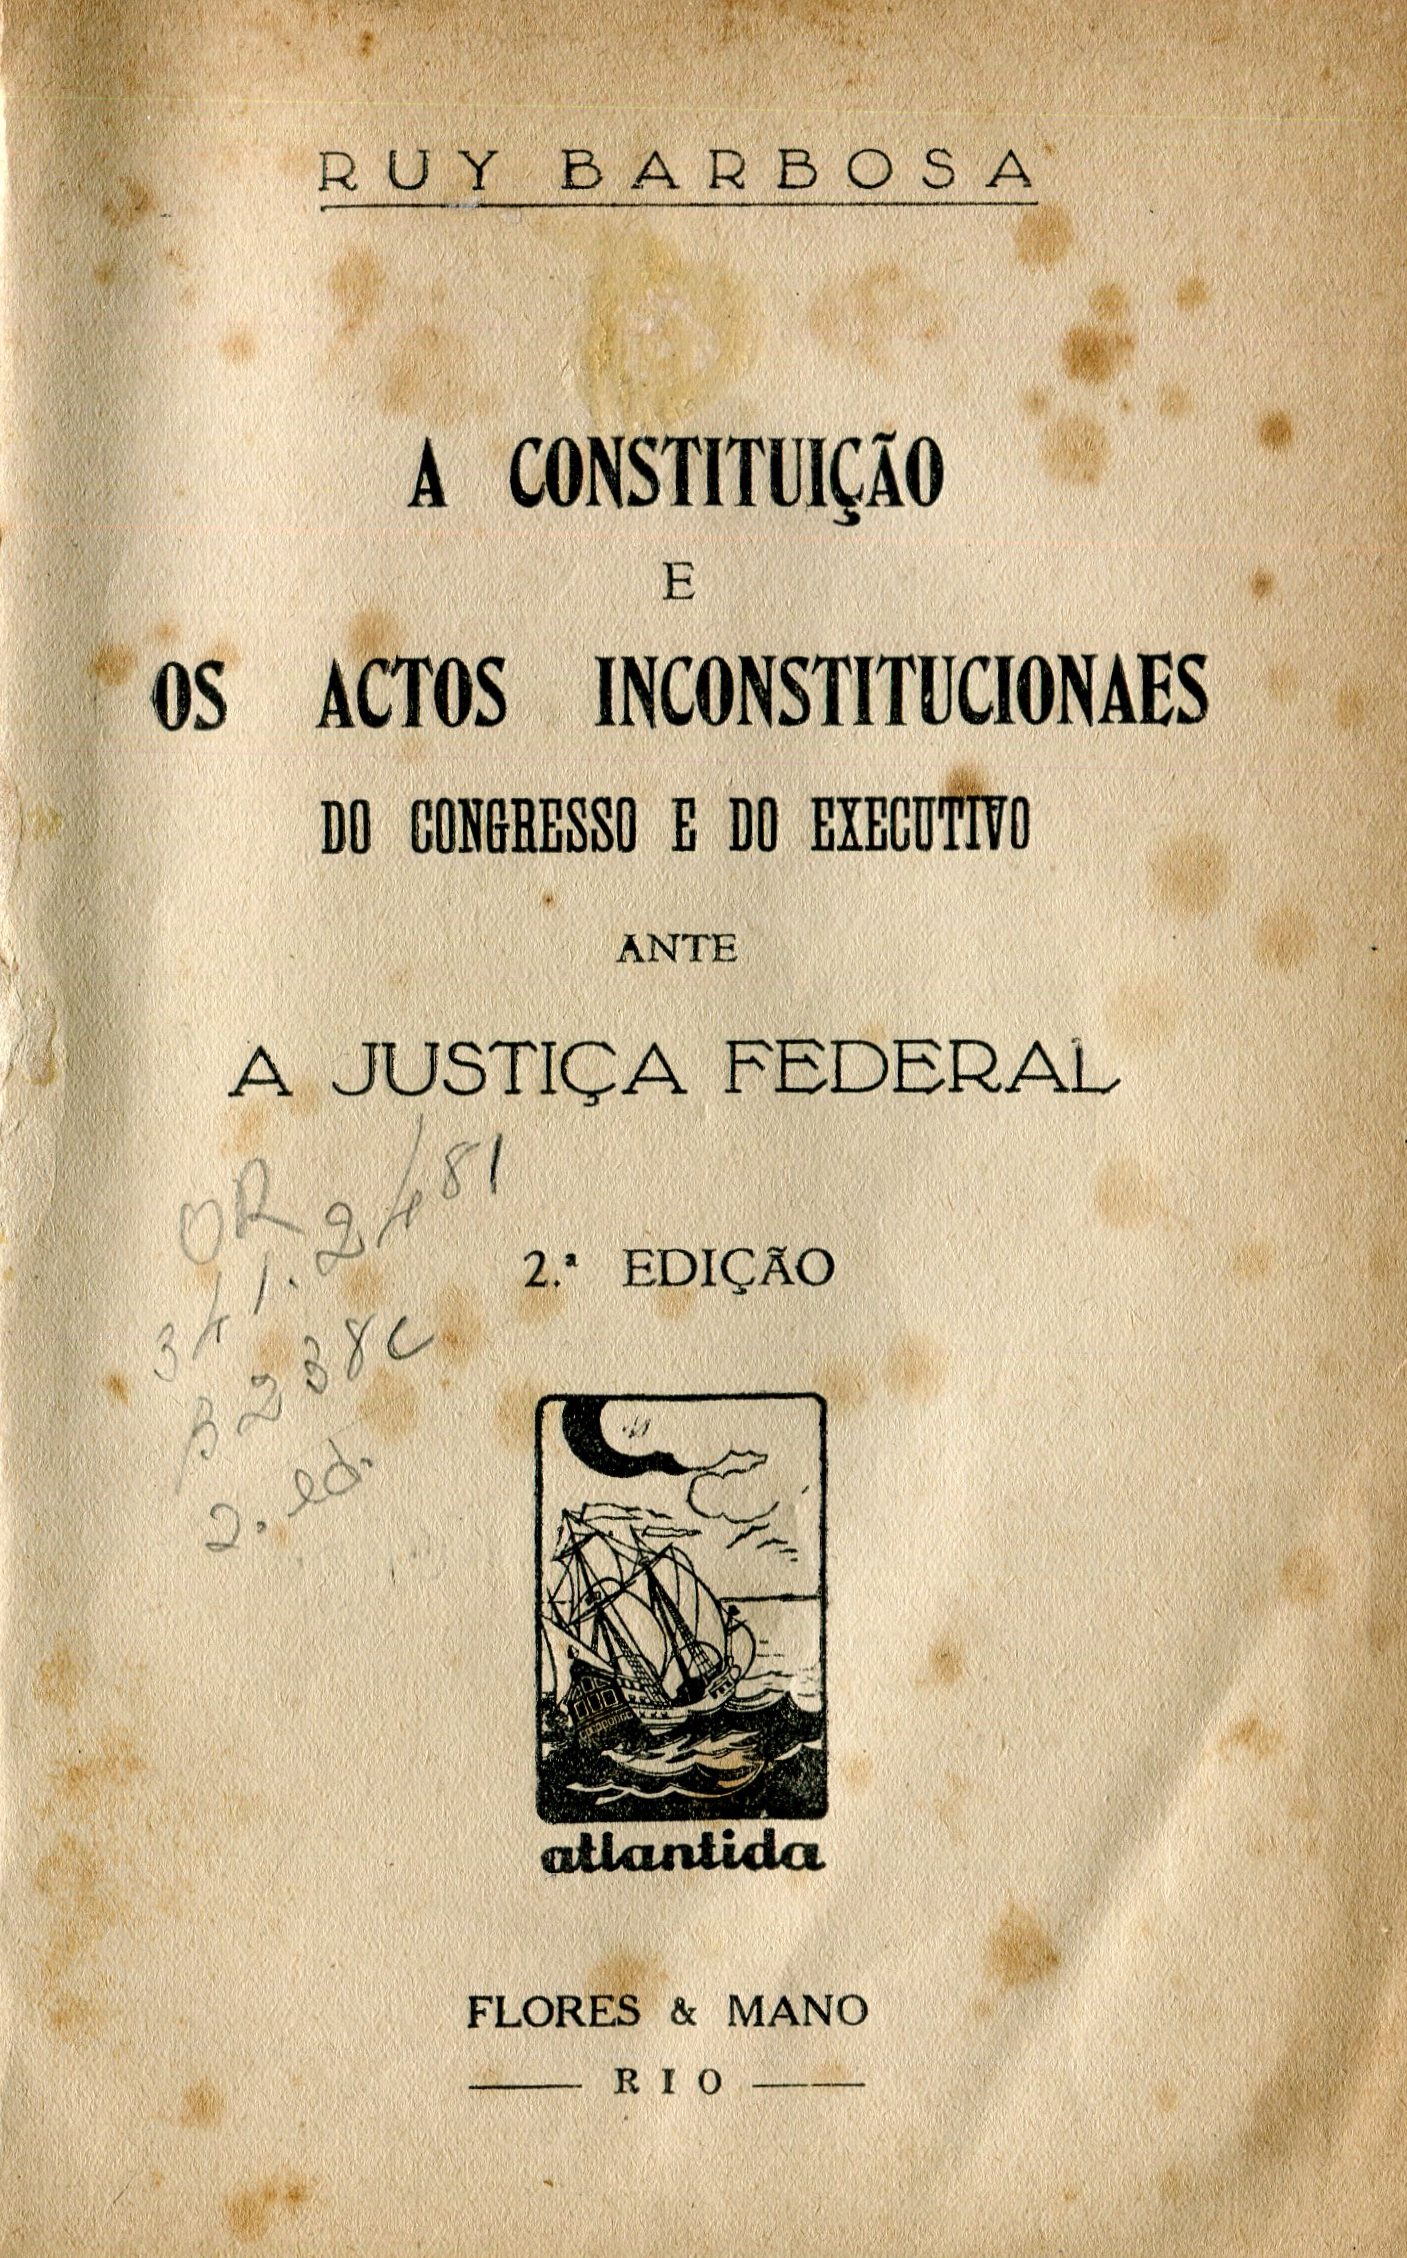 Capa do Livro A Constituição e os Actos Inconstitucionaes do Congresso e do Executivo Ante a Justiça Federal - 341.24 (81)